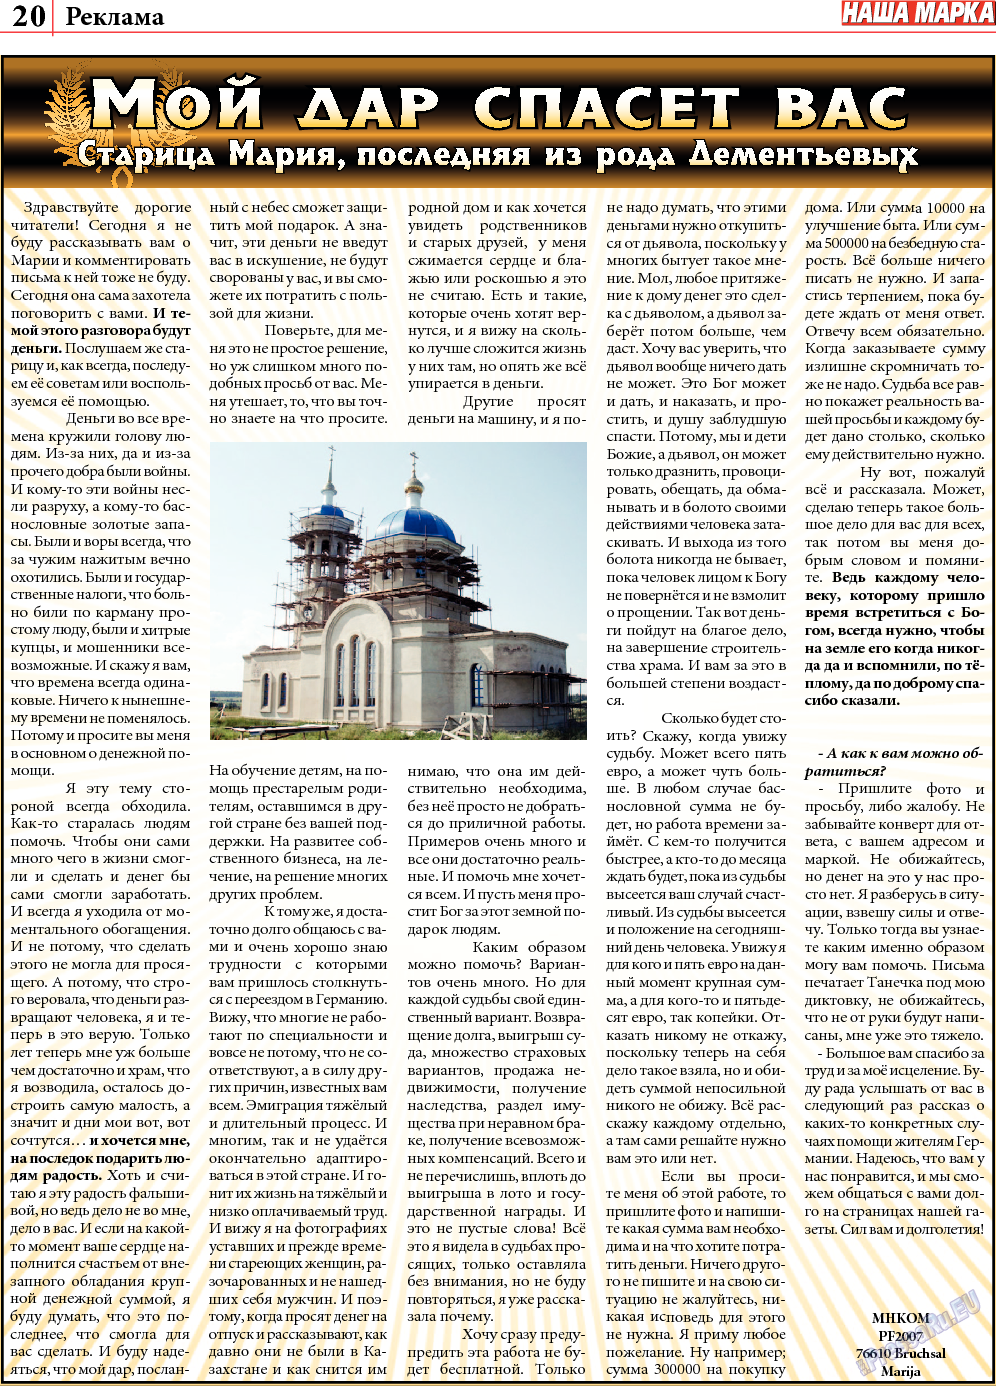 Наша марка (газета). 2013 год, номер 5, стр. 20